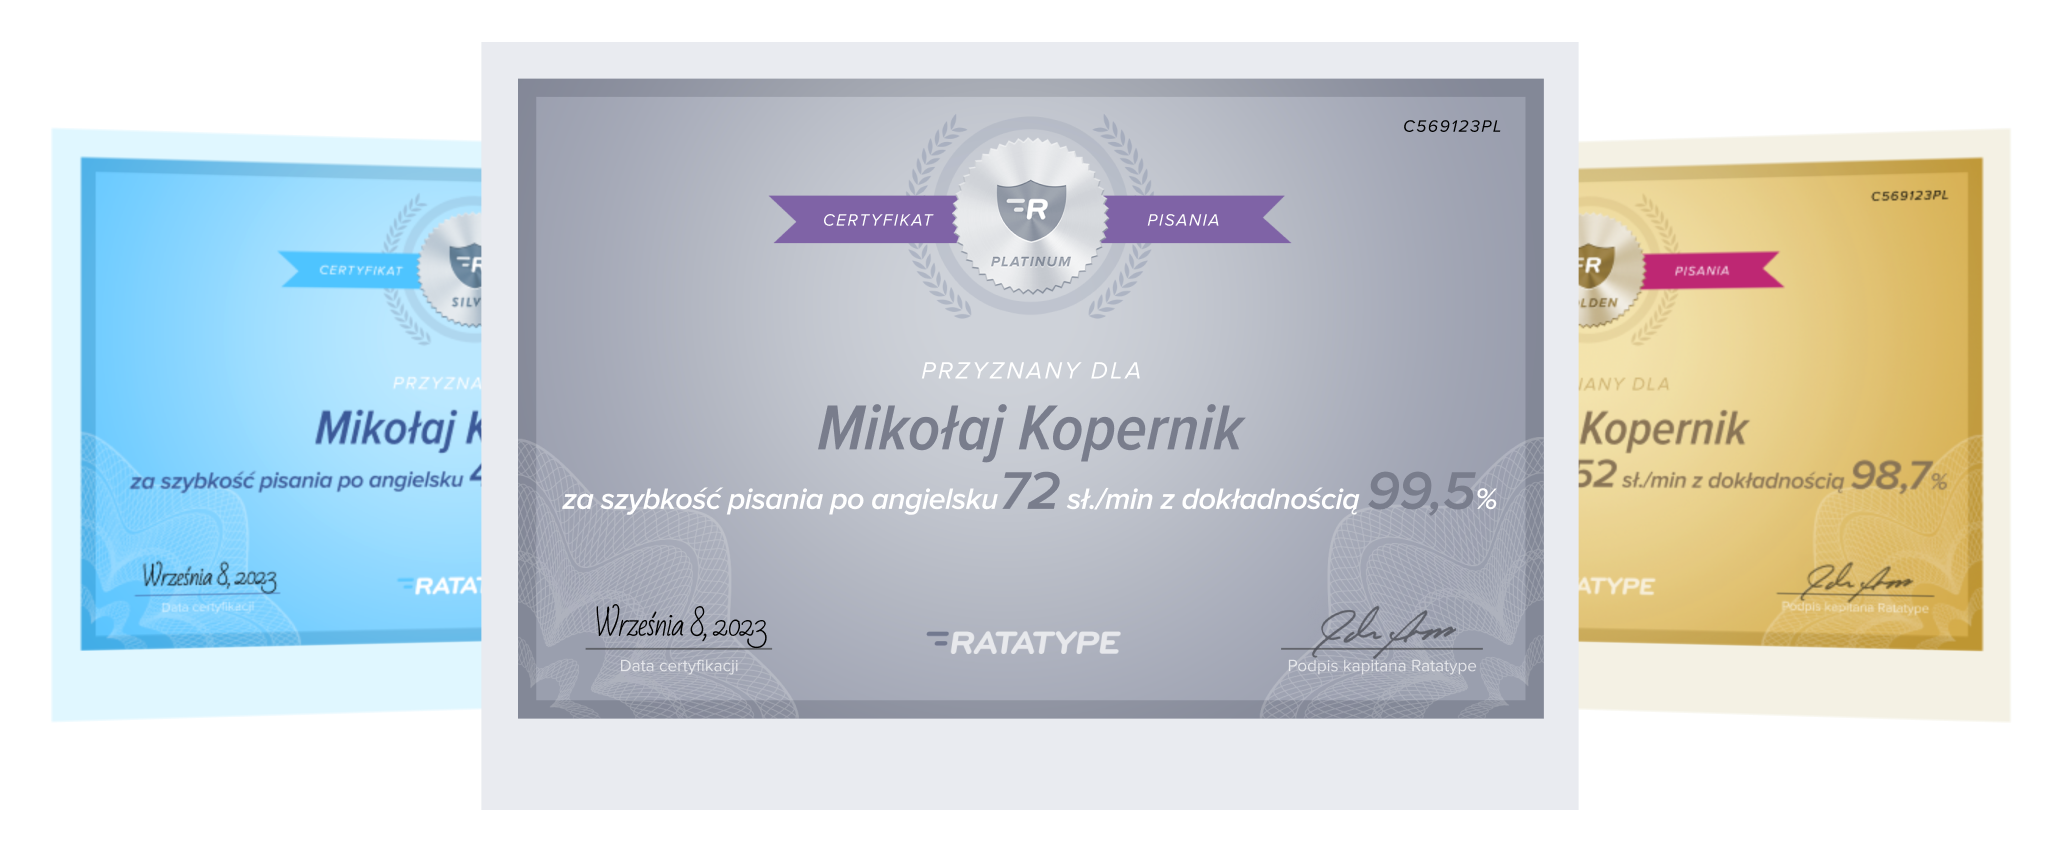 alt: typing sertificate